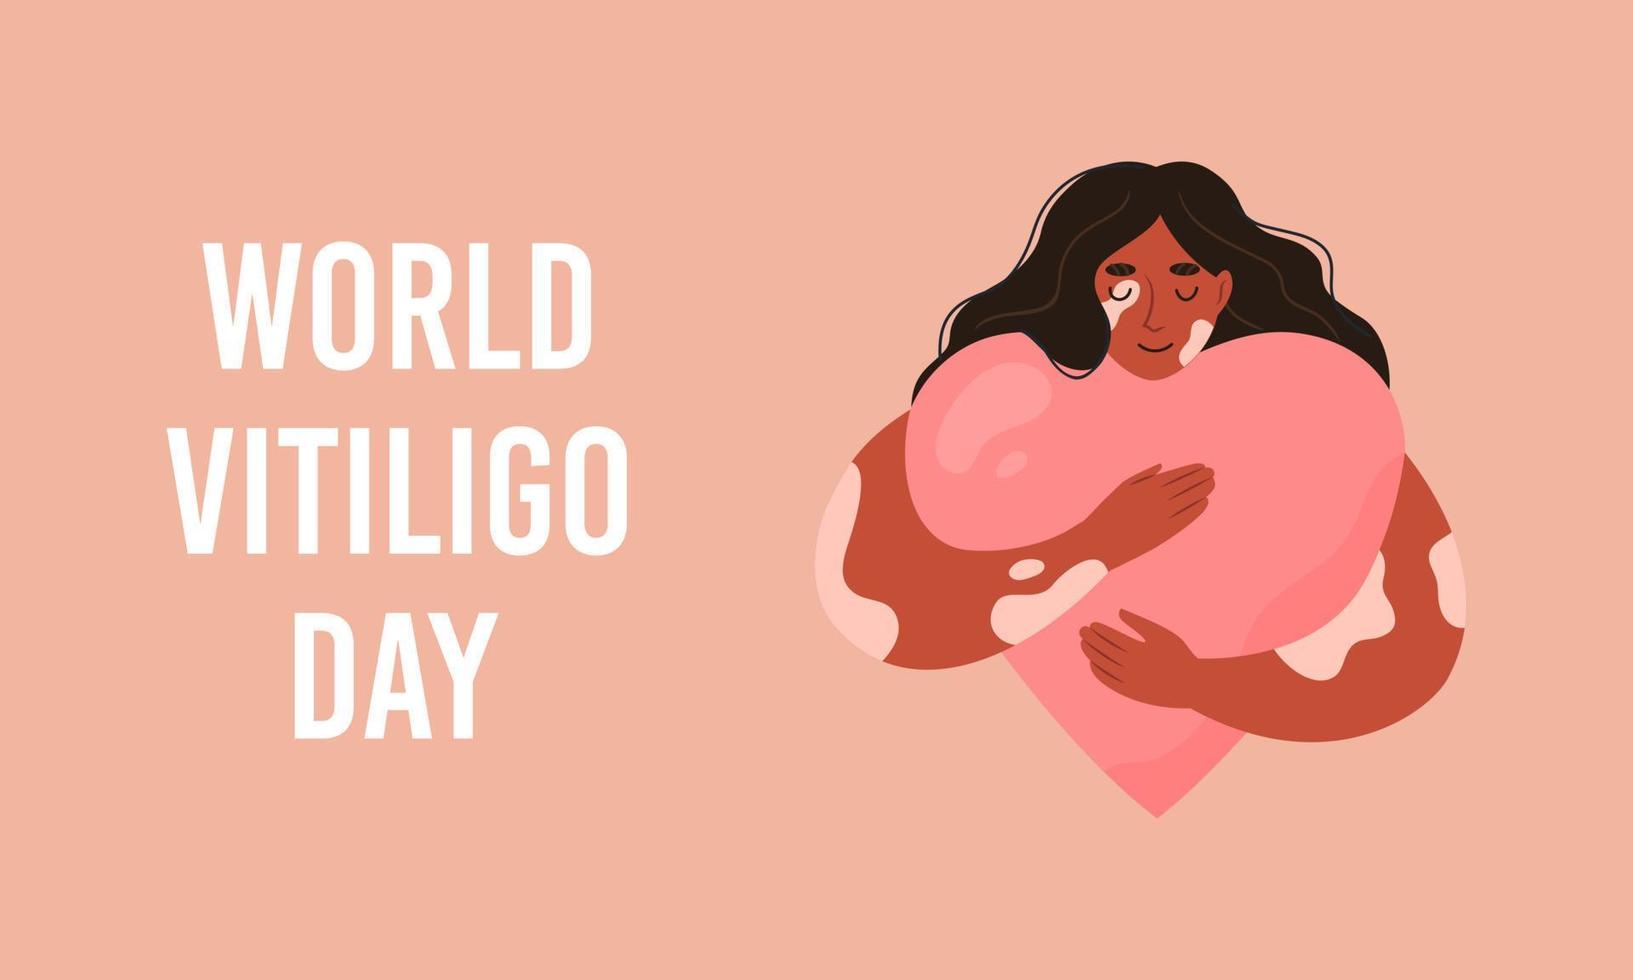 värld vitiligo dag baner. kvinna med vitiligo omfamnar en hjärta med kärlek. begrepp till Stöd människor levande med vitiligo. vektor platt illustration.